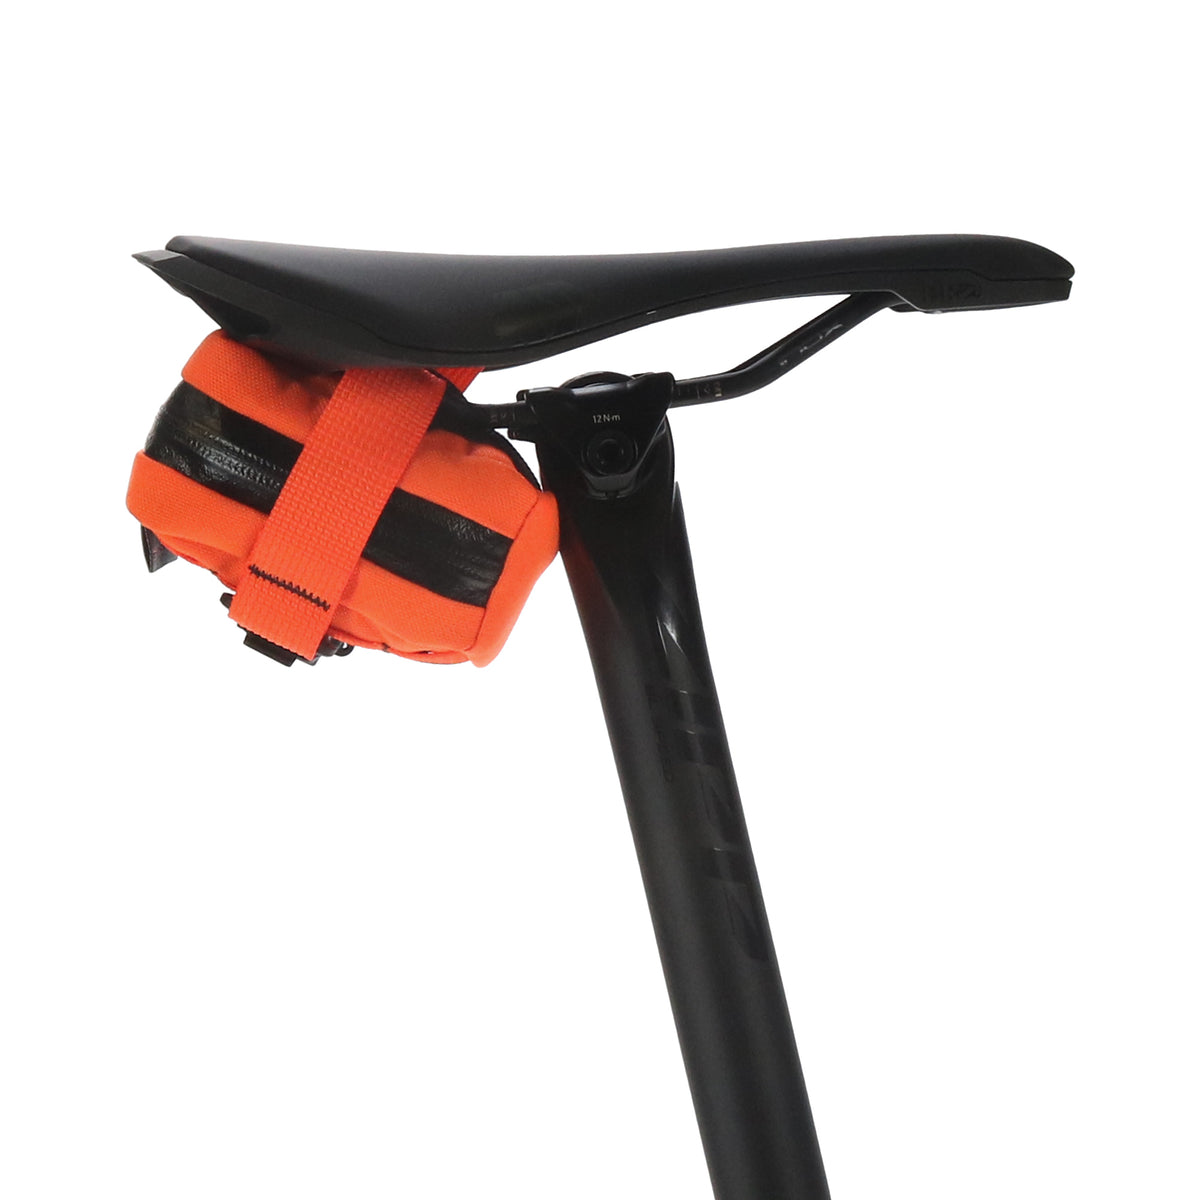 skingrowsback Plan B Micron cycling saddle bag Neon Orange